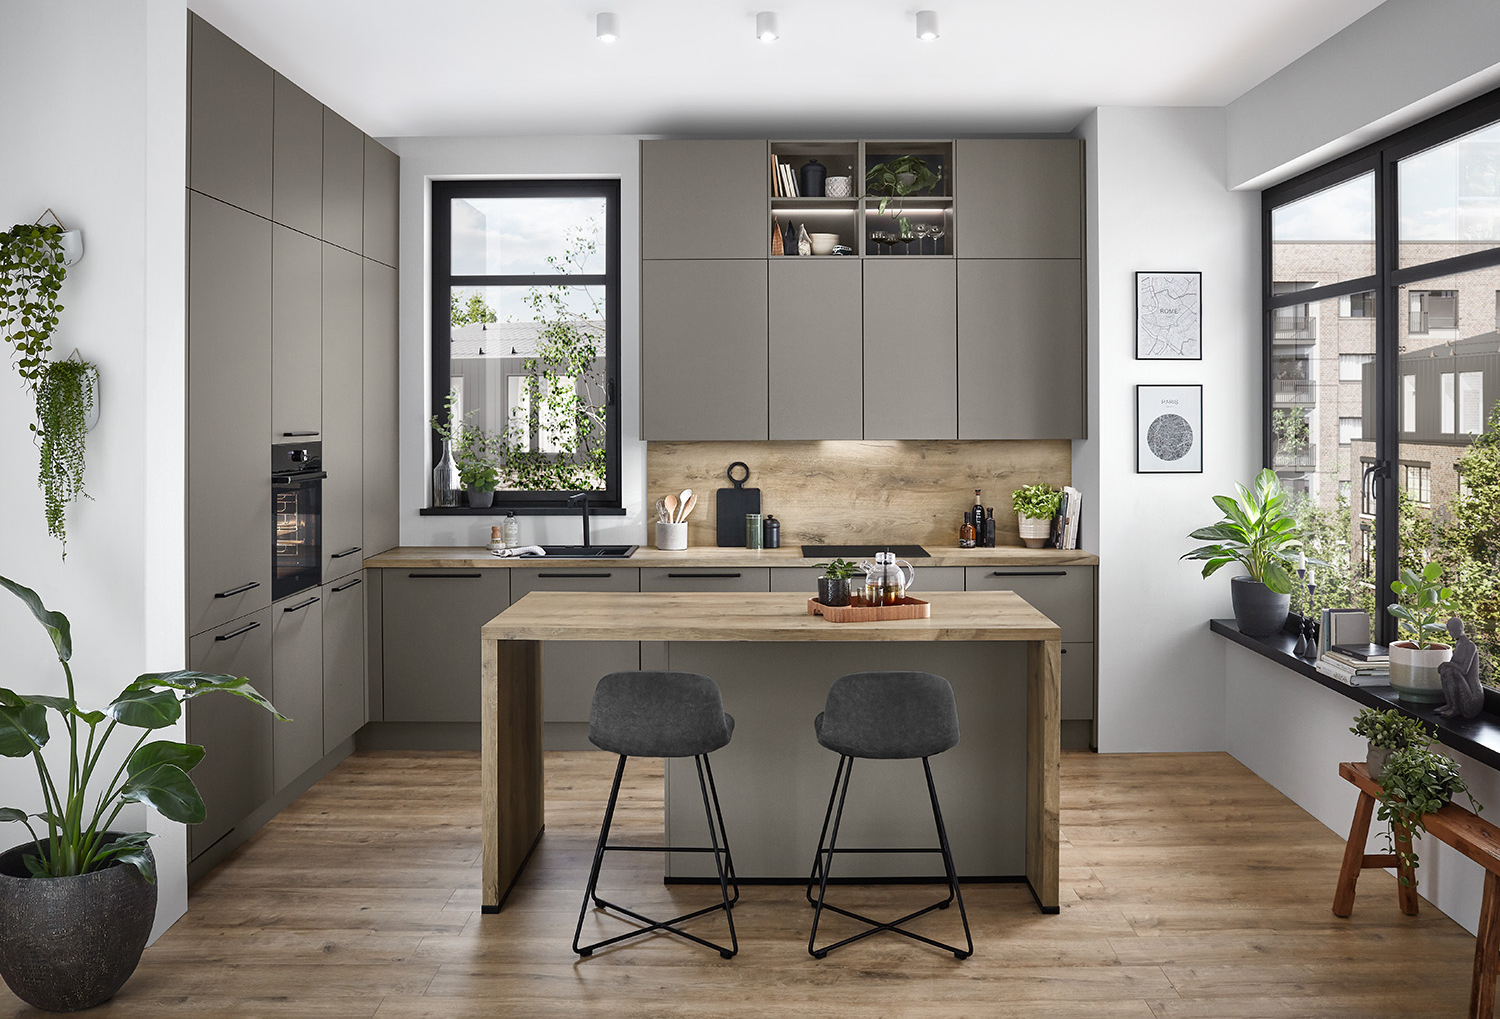 Diseño de cocina moderna con gabinetes grises elegantes, acentos de madera, electrodomésticos integrados y una isla central con taburetes, iluminada por luz natural de grandes ventanas.